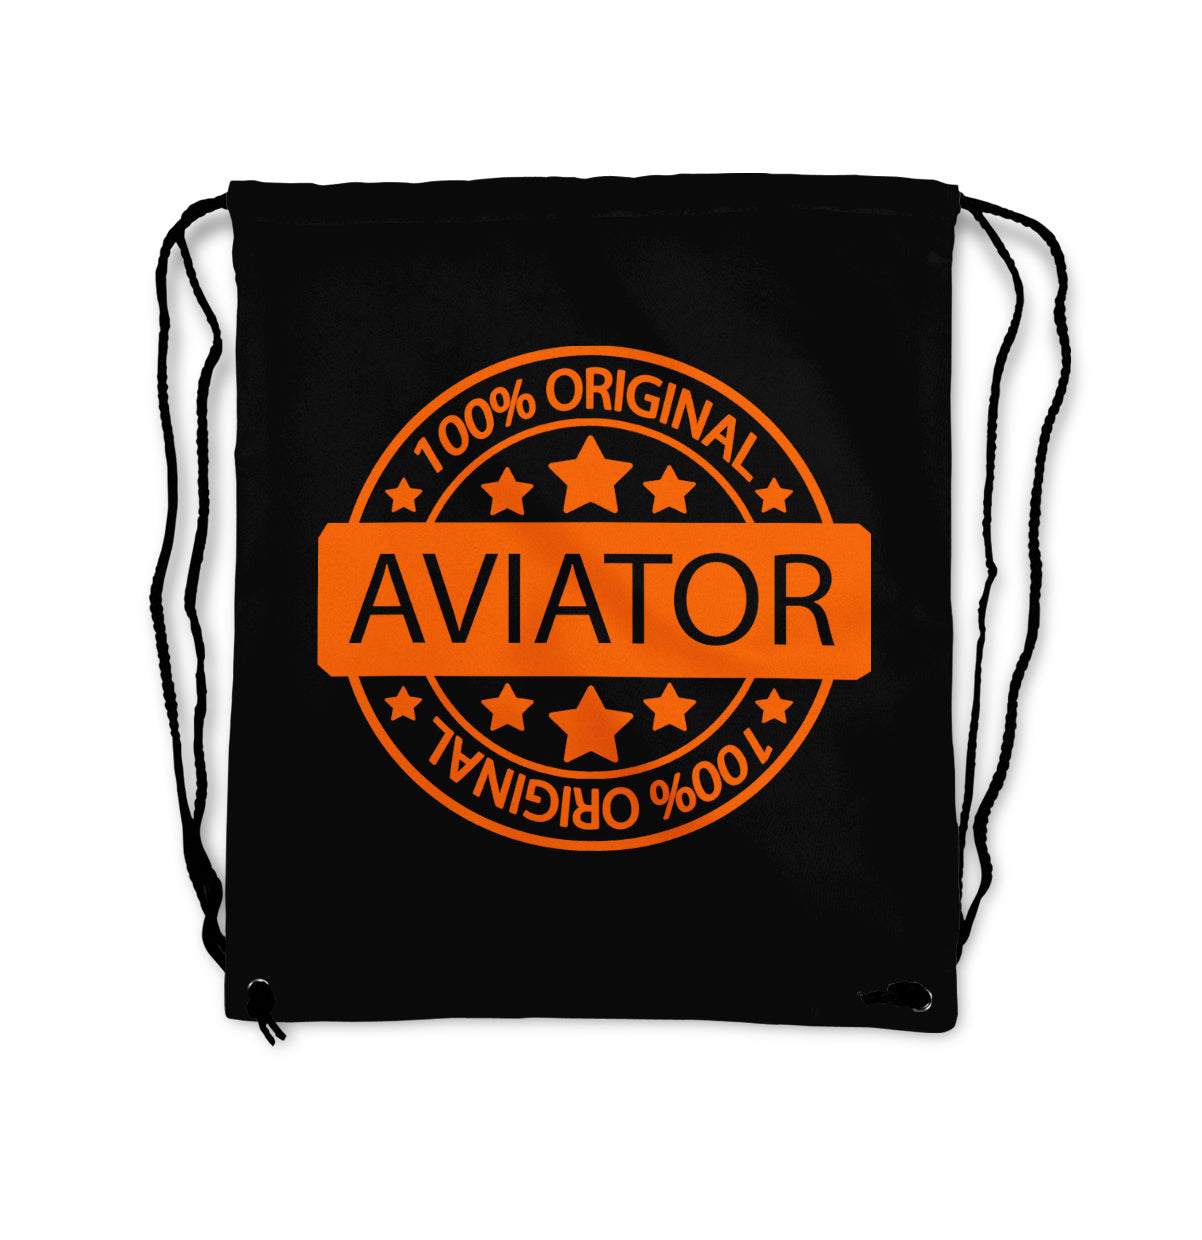 100 Original Aviator Designed Drawstring Bags